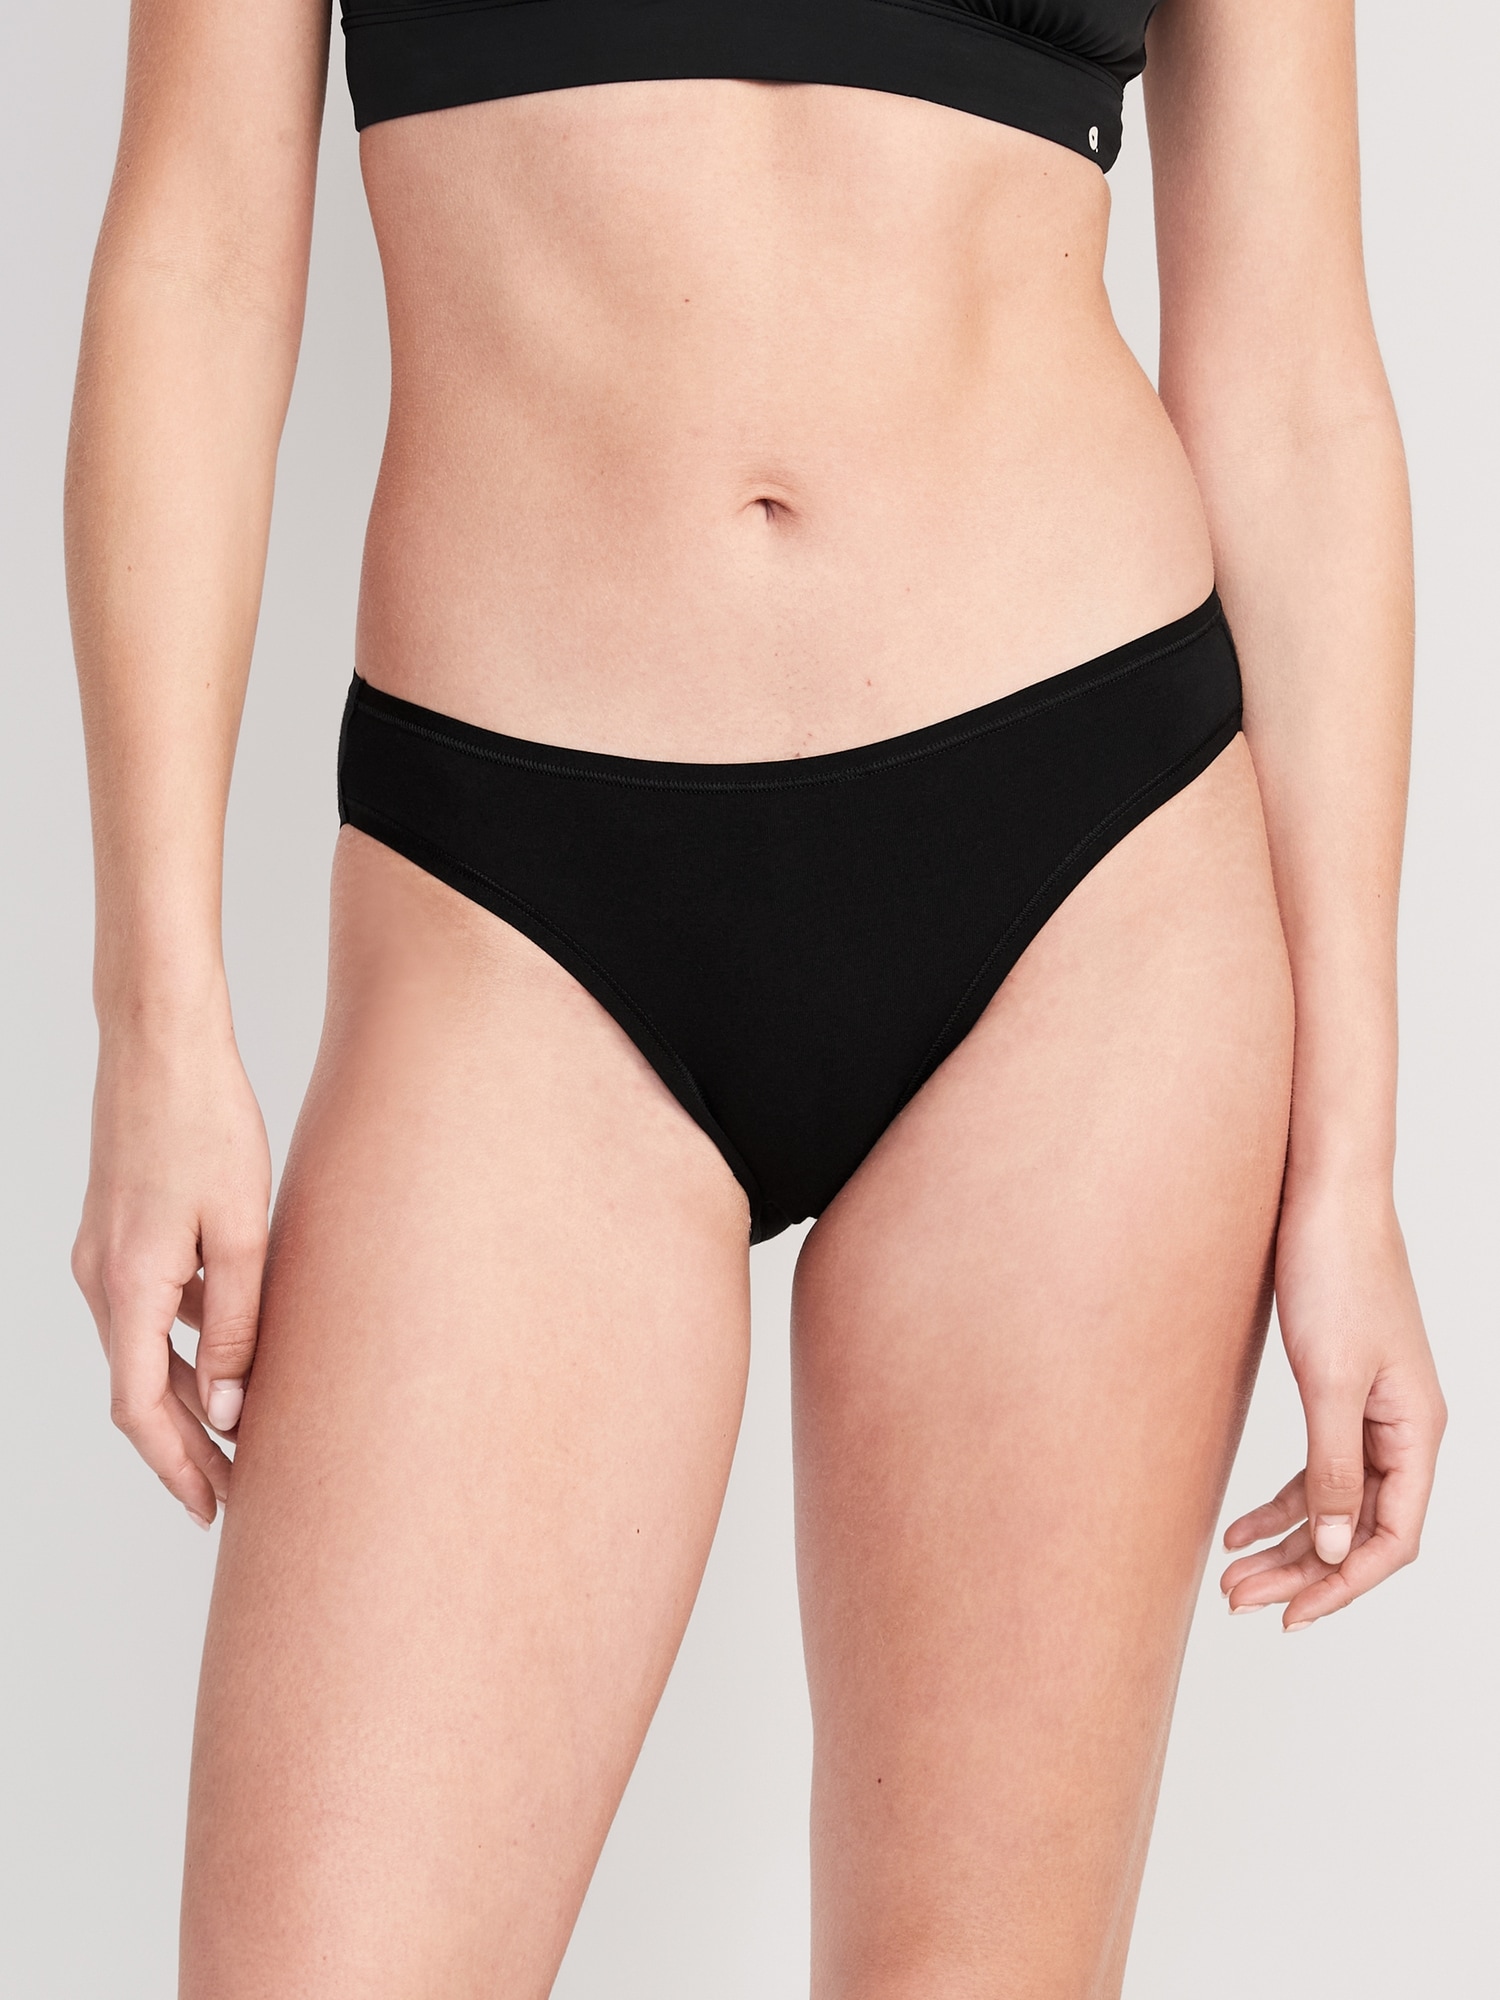 Swim Crop Top in Cherry, Women's Swimwear - Negative Underwear